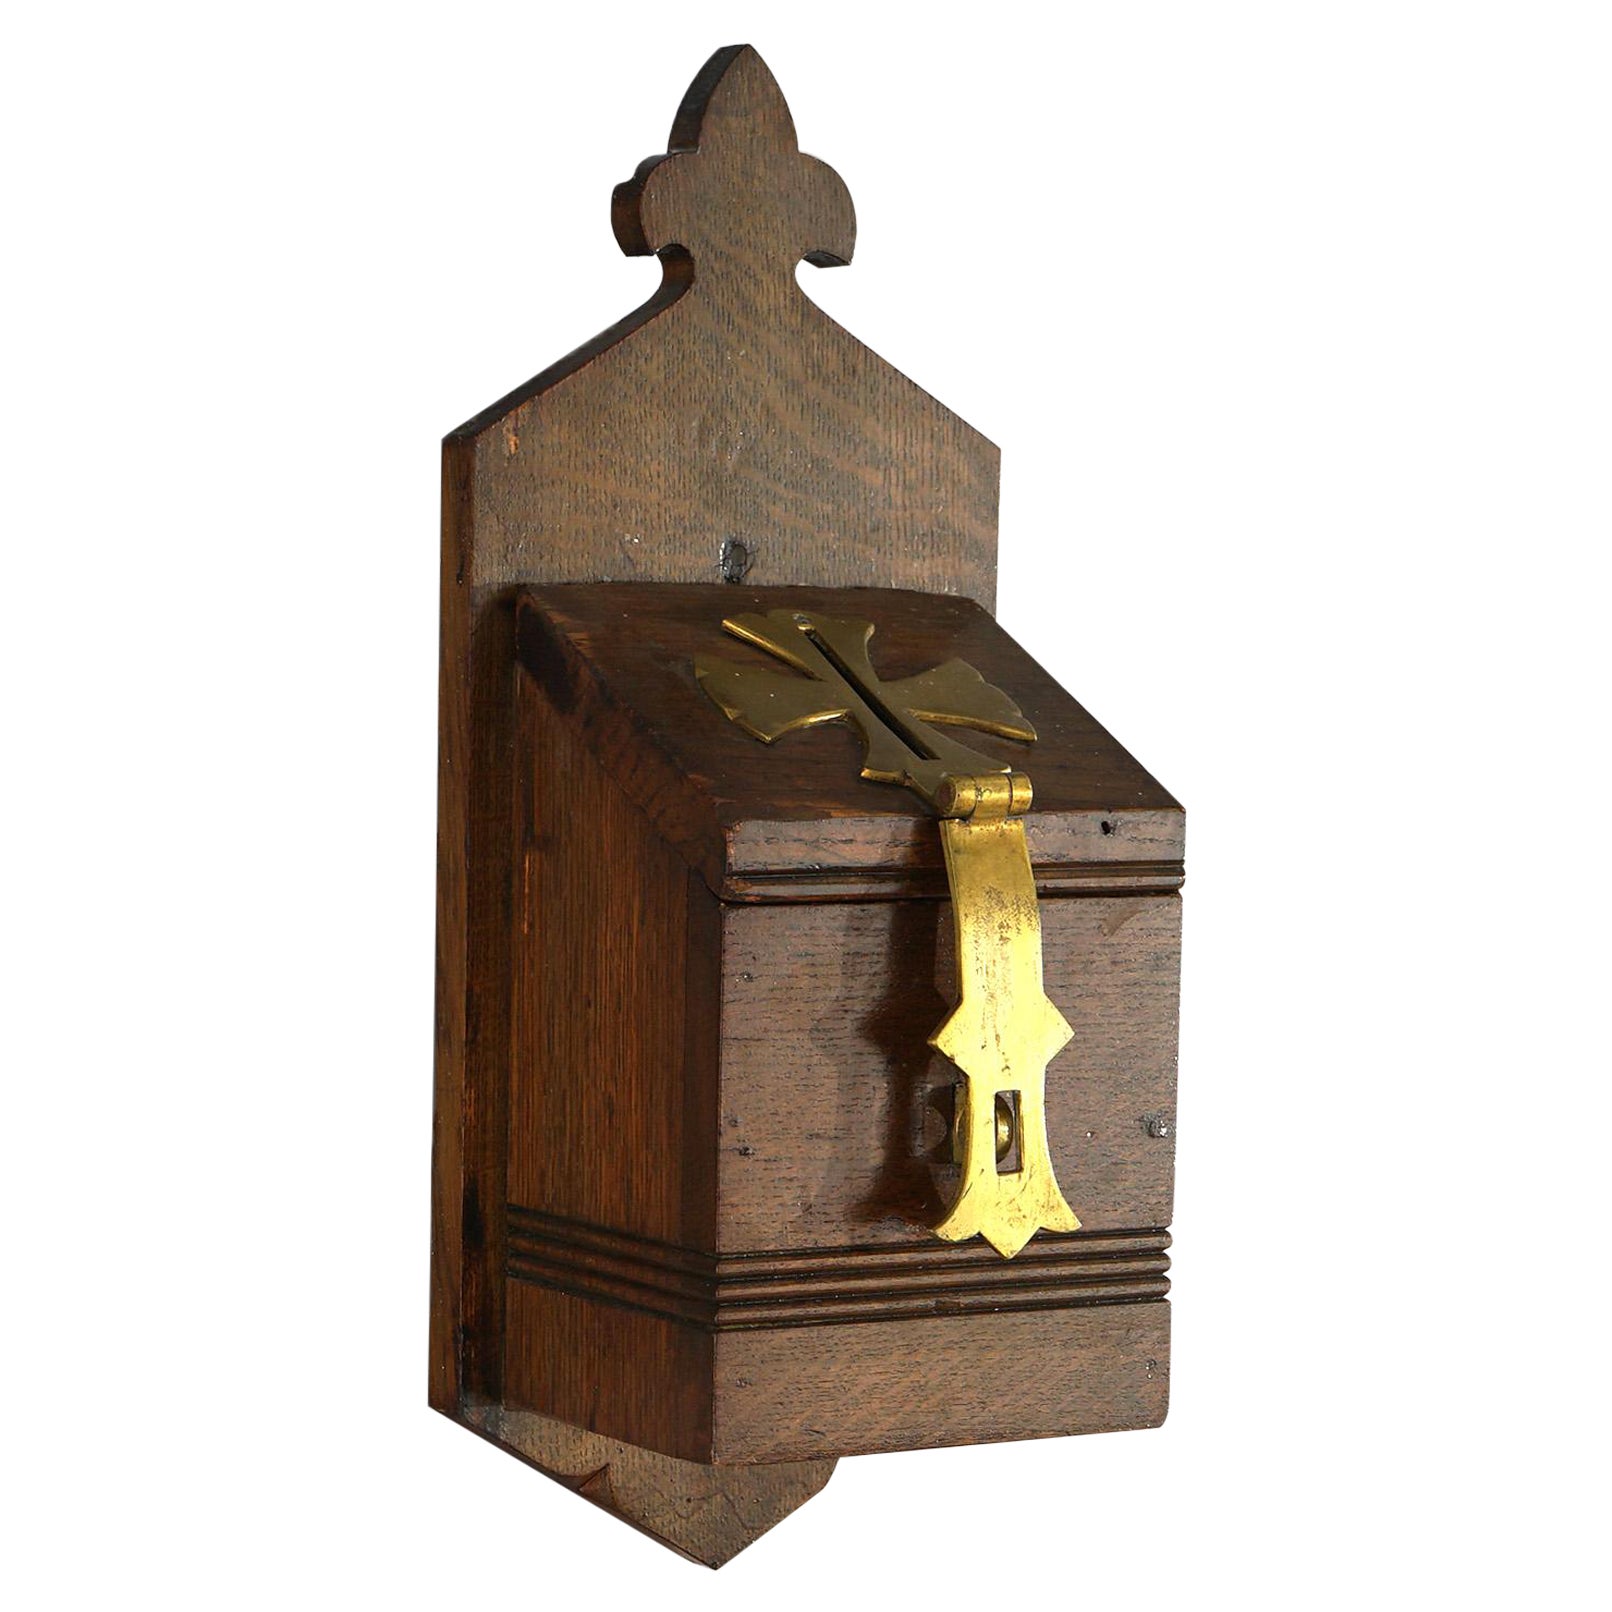 Antique Gothic Revival Quarter Sawn Oak Drop Box with Brass Trim 19thC